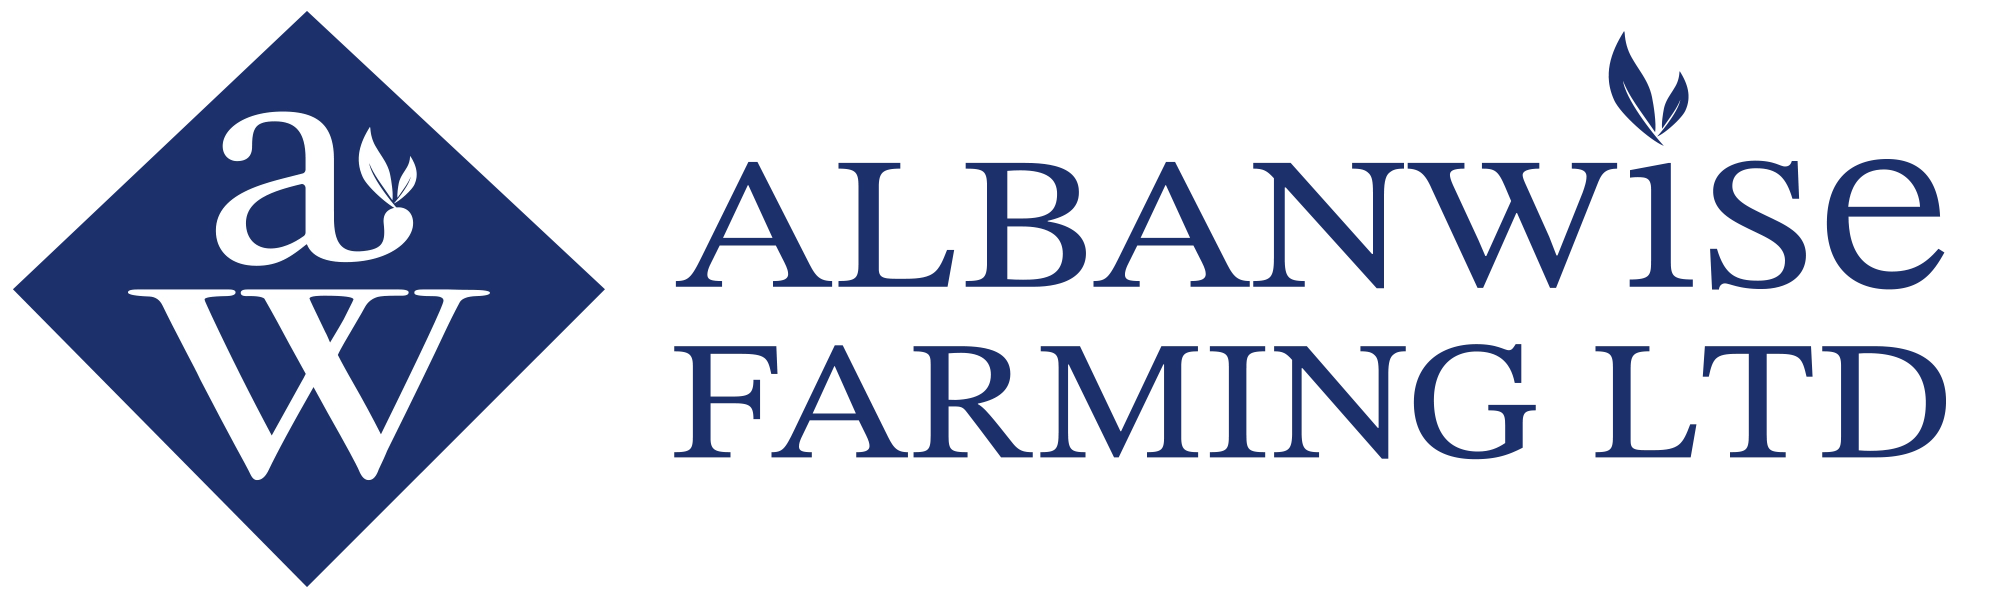 Albanwise Farming